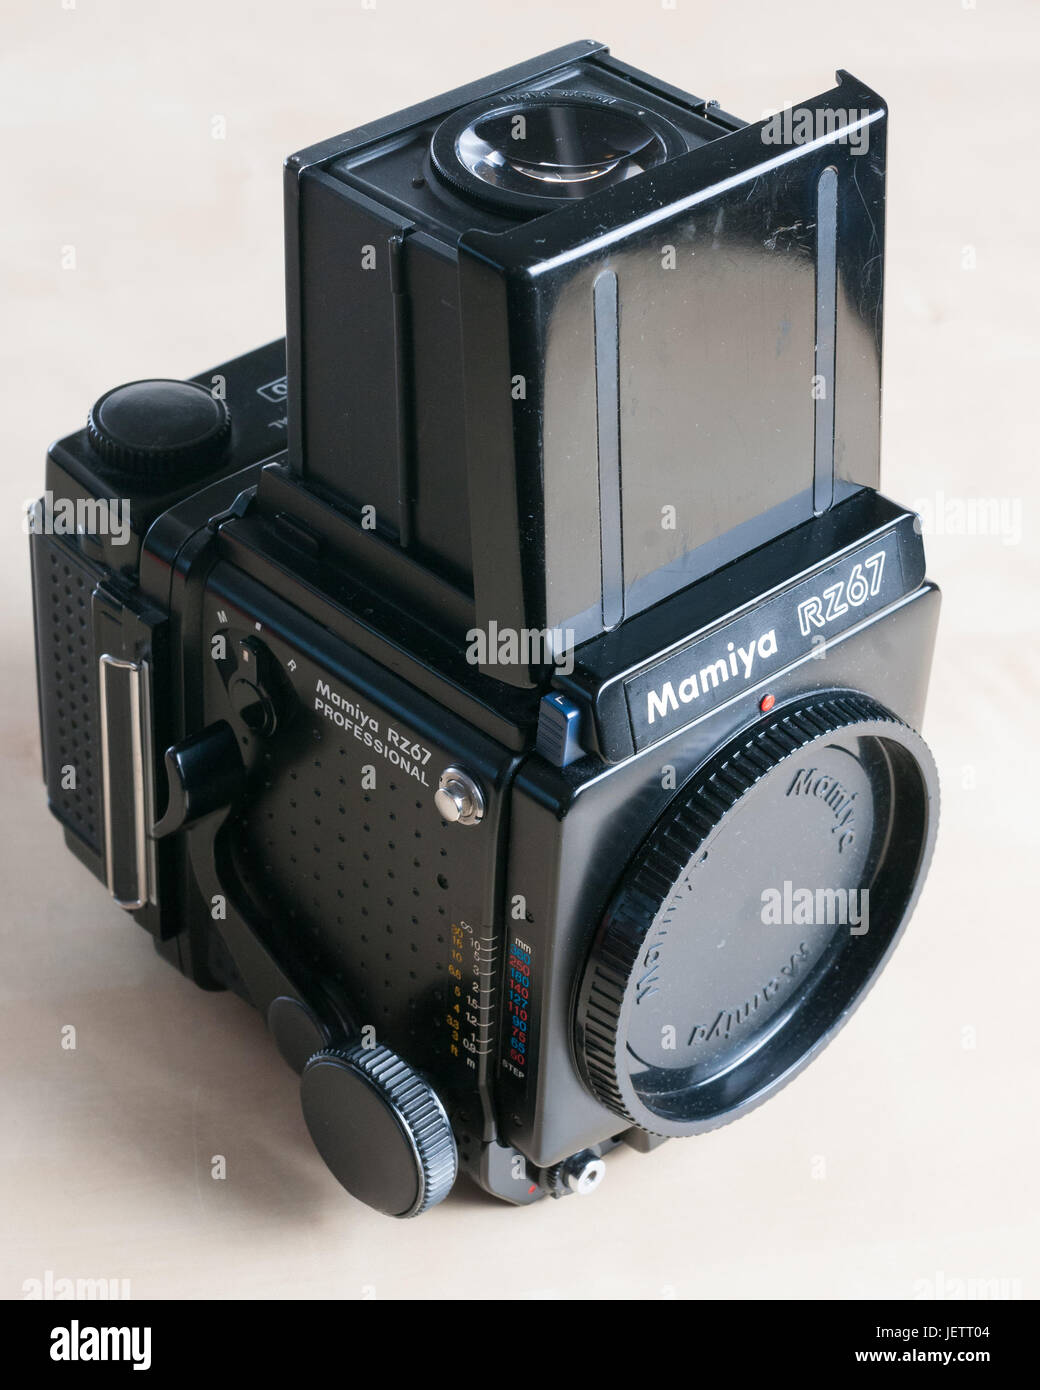 Mamiya RZ67 Medium Format Film Camera Stock Photo